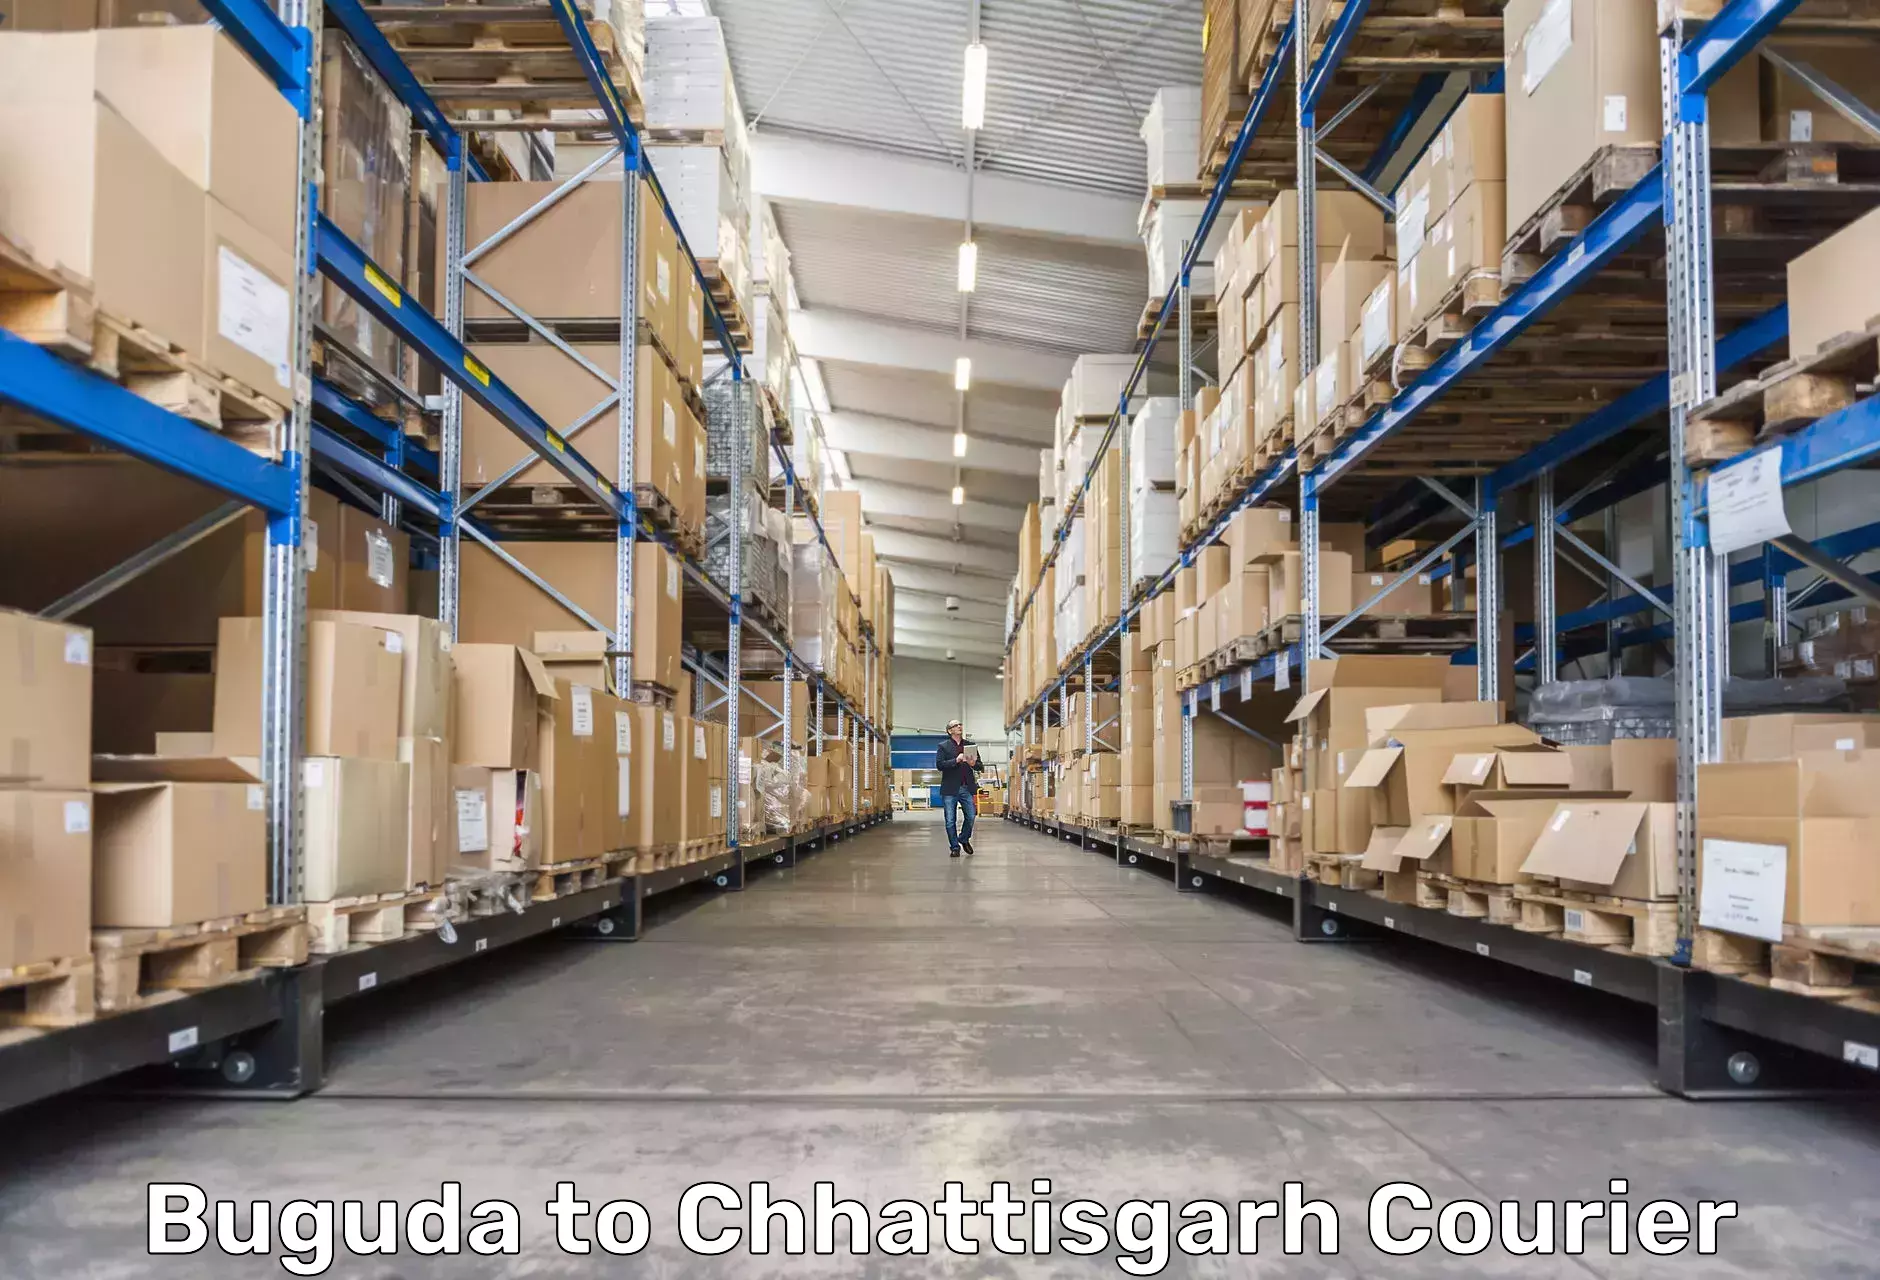 Cargo delivery service Buguda to Chhattisgarh